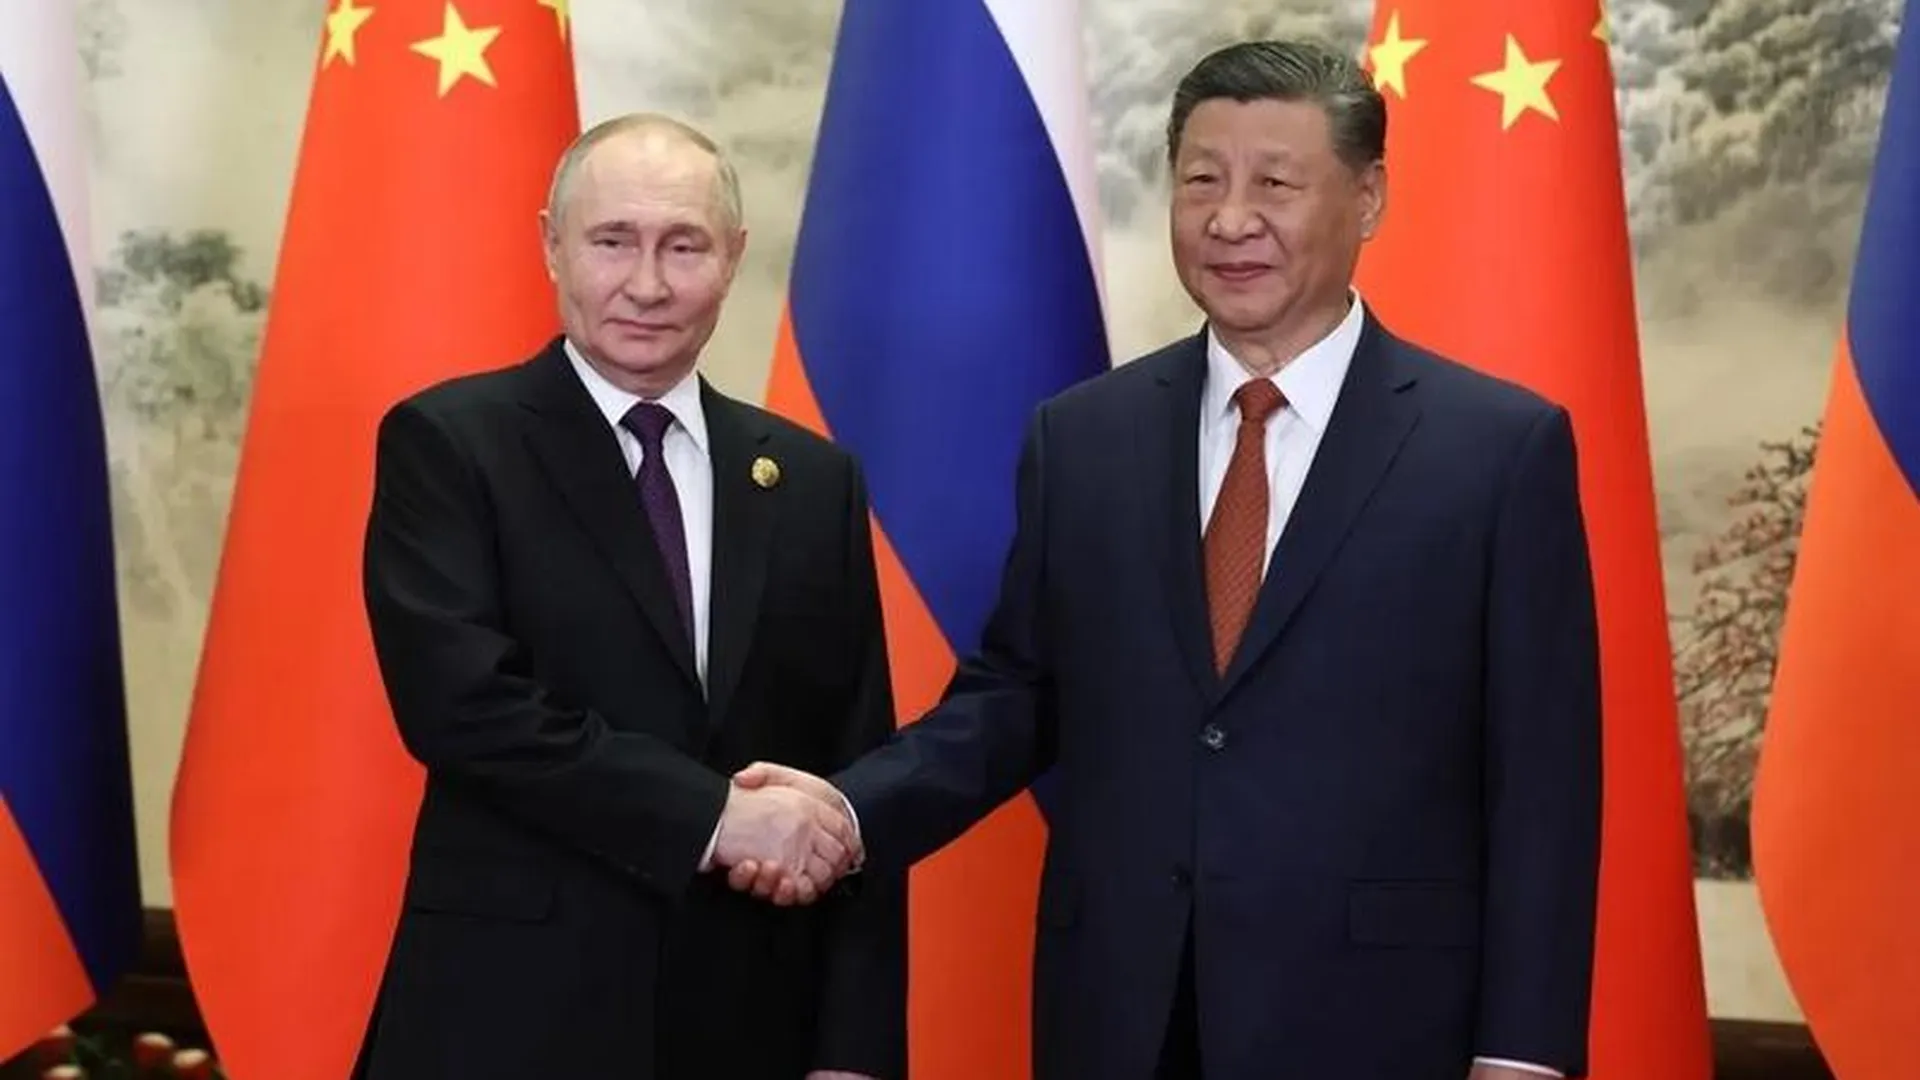 Путин прибыл в Харбин в ходе визита в Китай